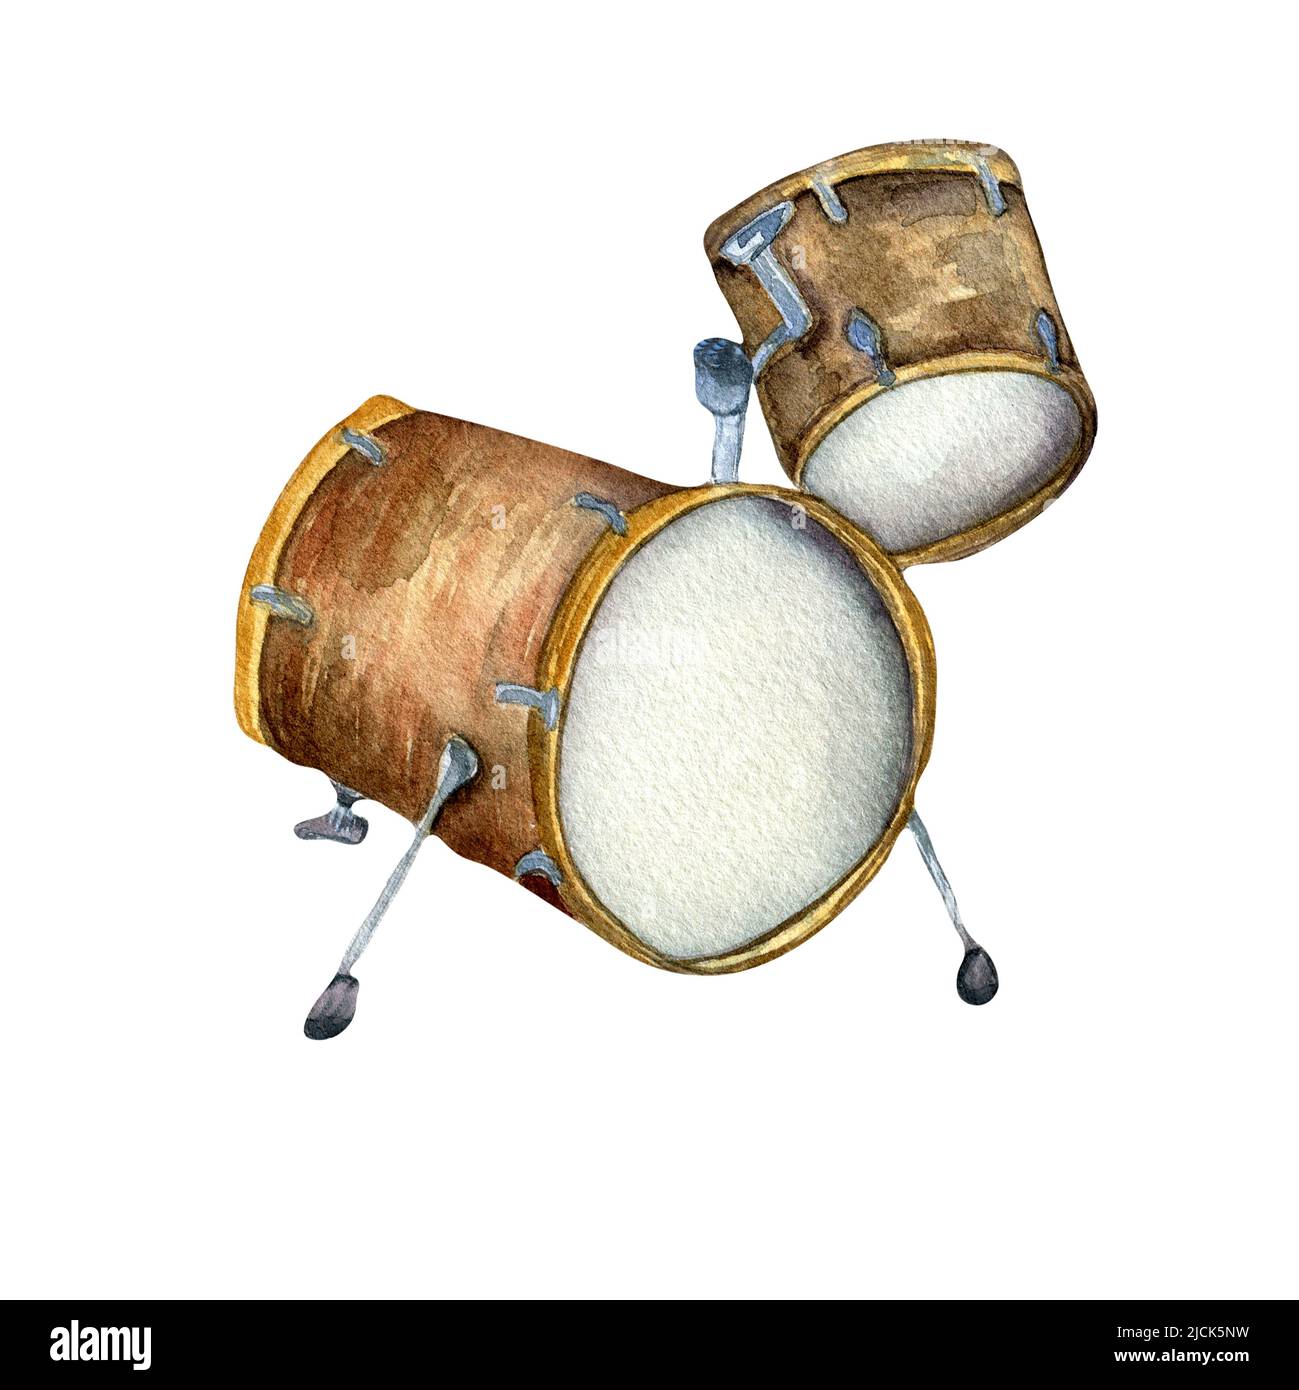 Illustrazione dell'acquerello del kit del tamburo isolata. Strumento musicale dipinto a mano. Percussione strumento di jazz, rock, musica folk. Elemento di design per wrappi Foto Stock